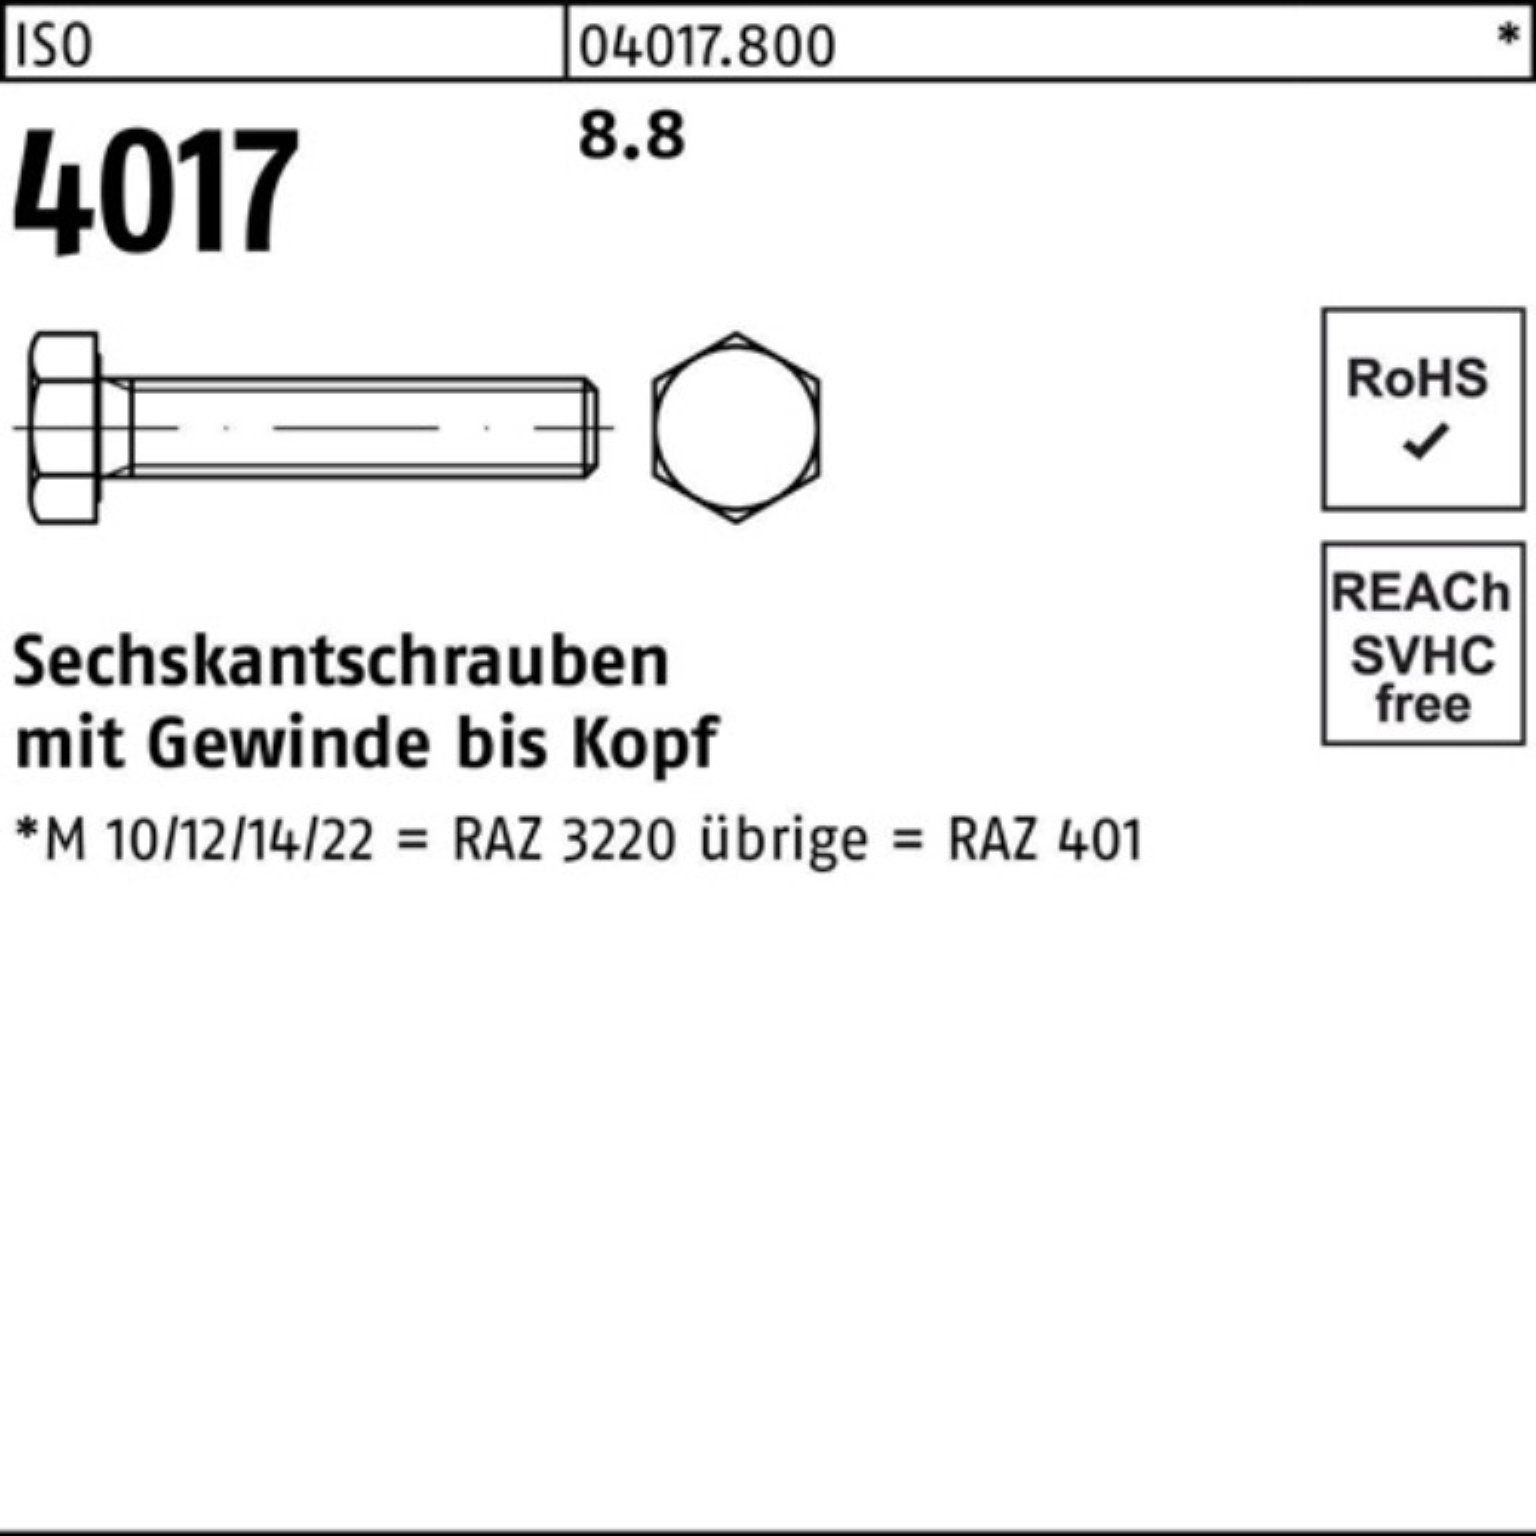 Bufab Sechskantschraube 4017 VG 500er ISO 10 500 8.8 ISO Pack Stück 401 Sechskantschraube M4x